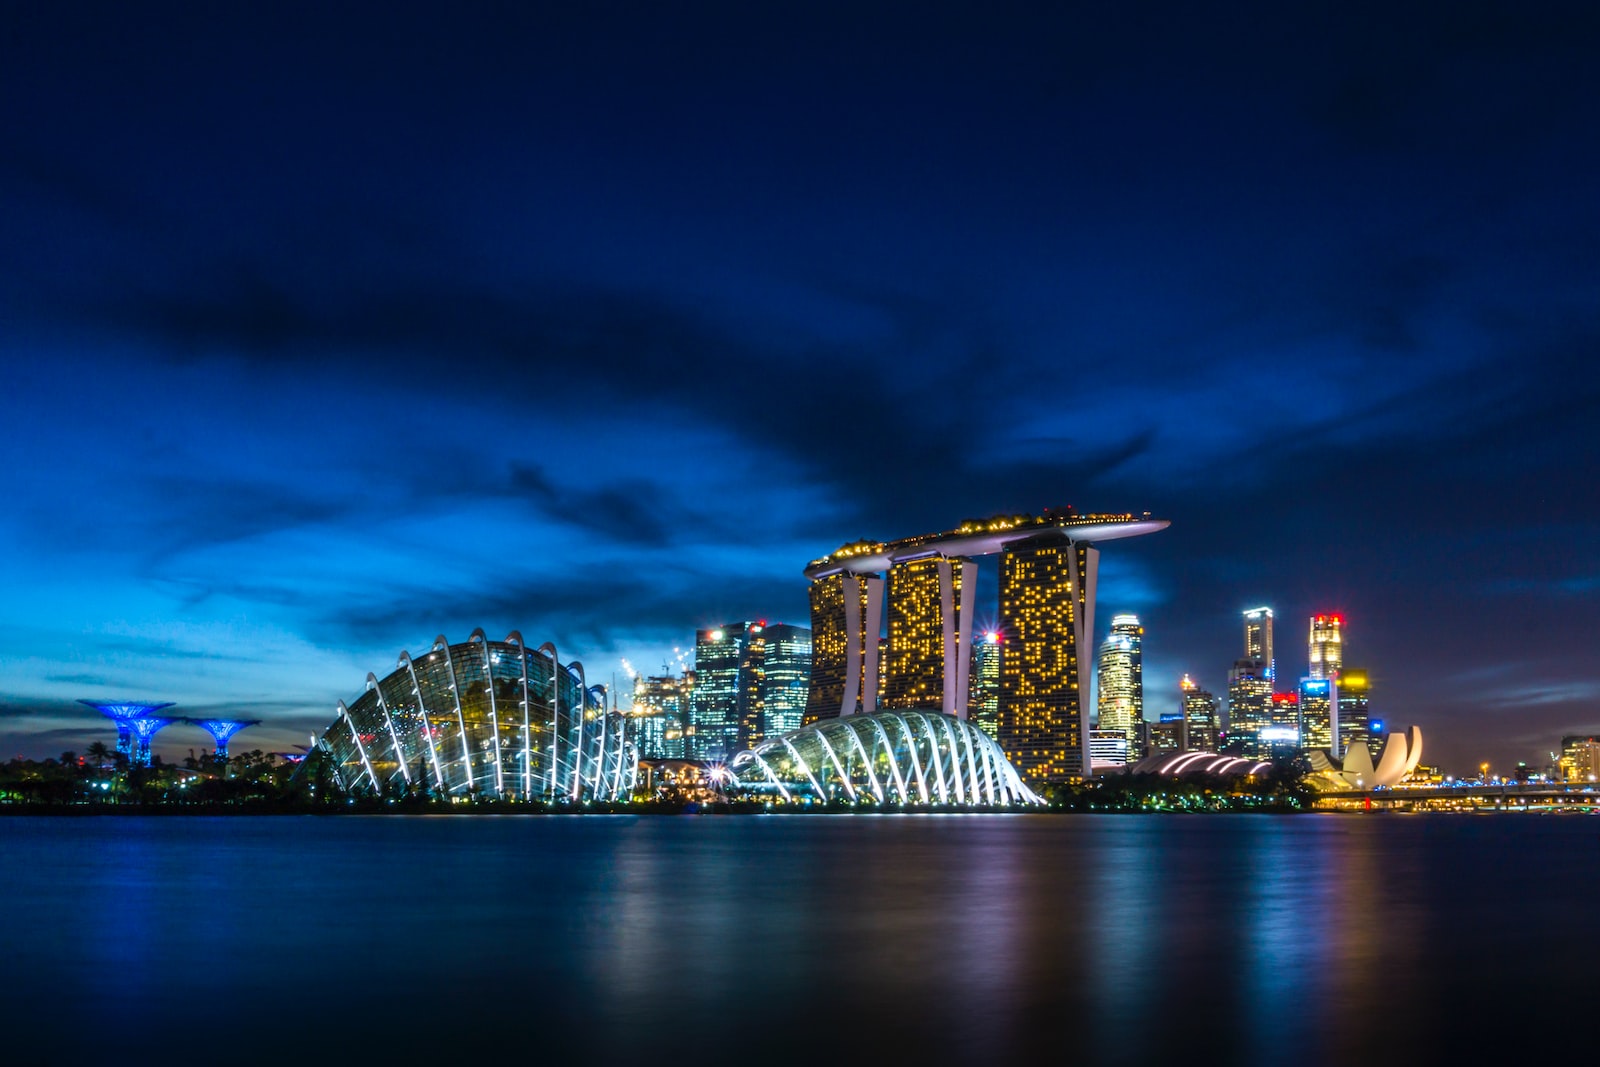 San Marina Bay, Singapore